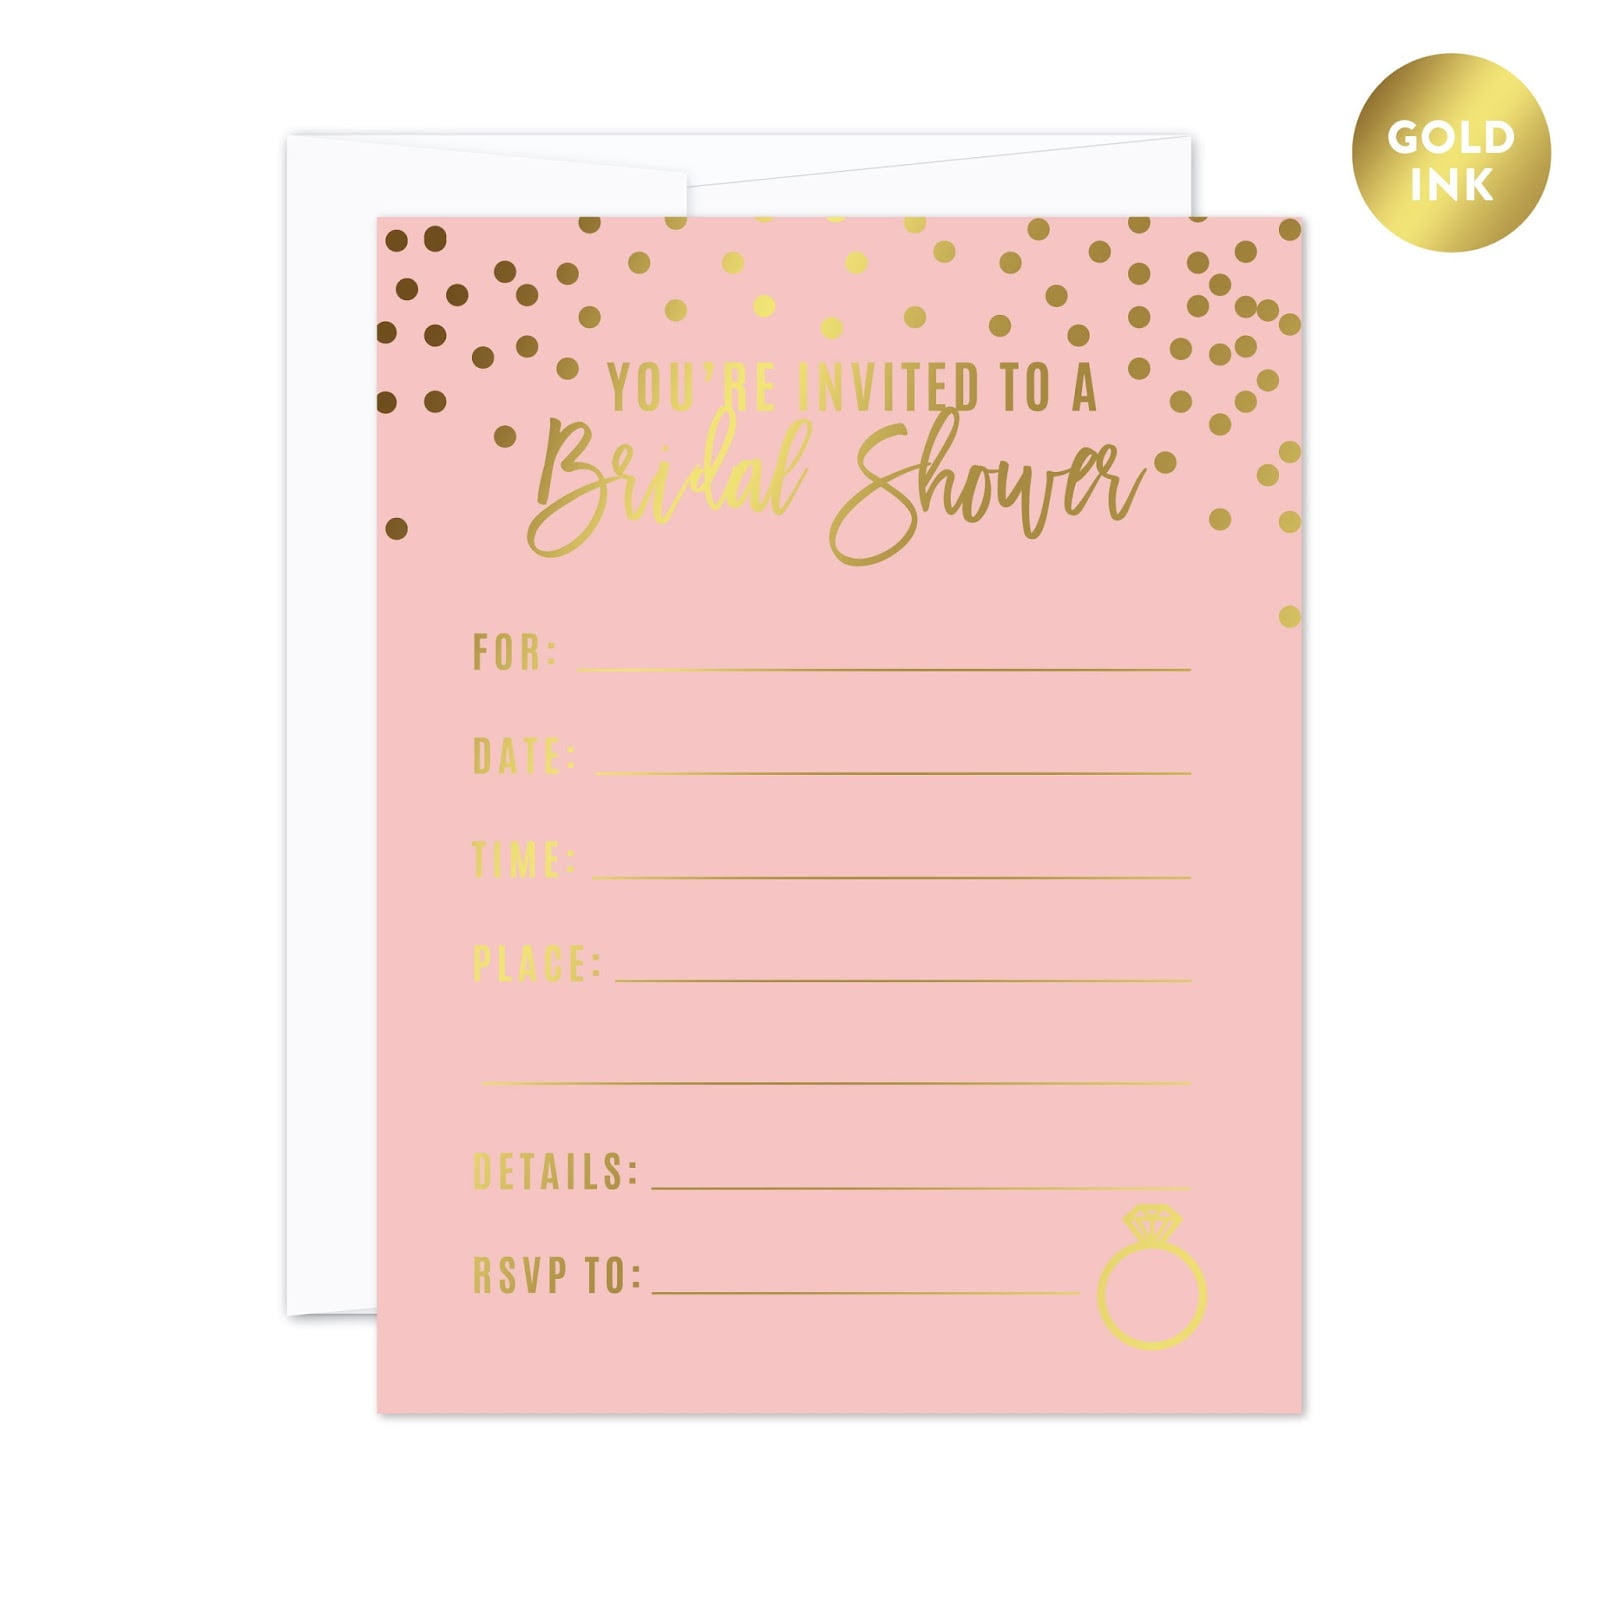 Bridal Shower Invitation and Thank You Cards Bridal Shower Invitation Template Package Bridal Shower Invitation Gold Glitter Confetti